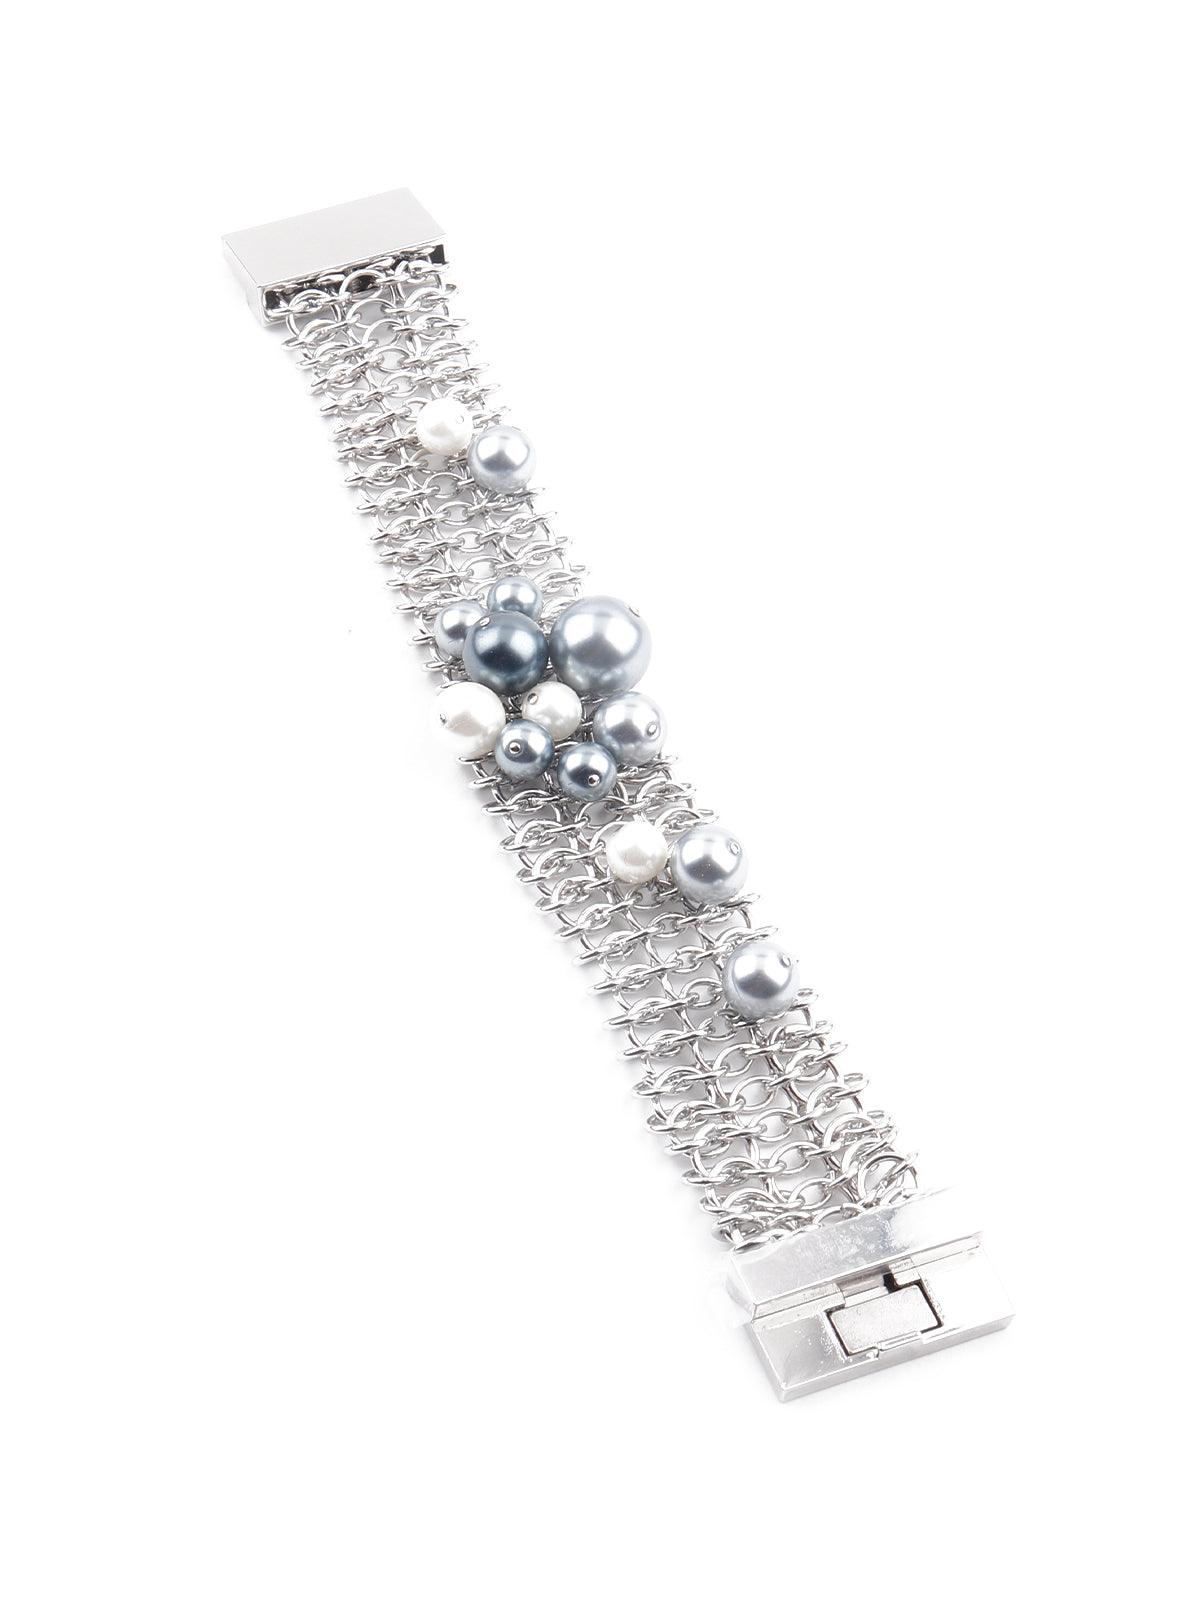 Women's Gorgeous Silver Tone Alluring Bracelet - Odette